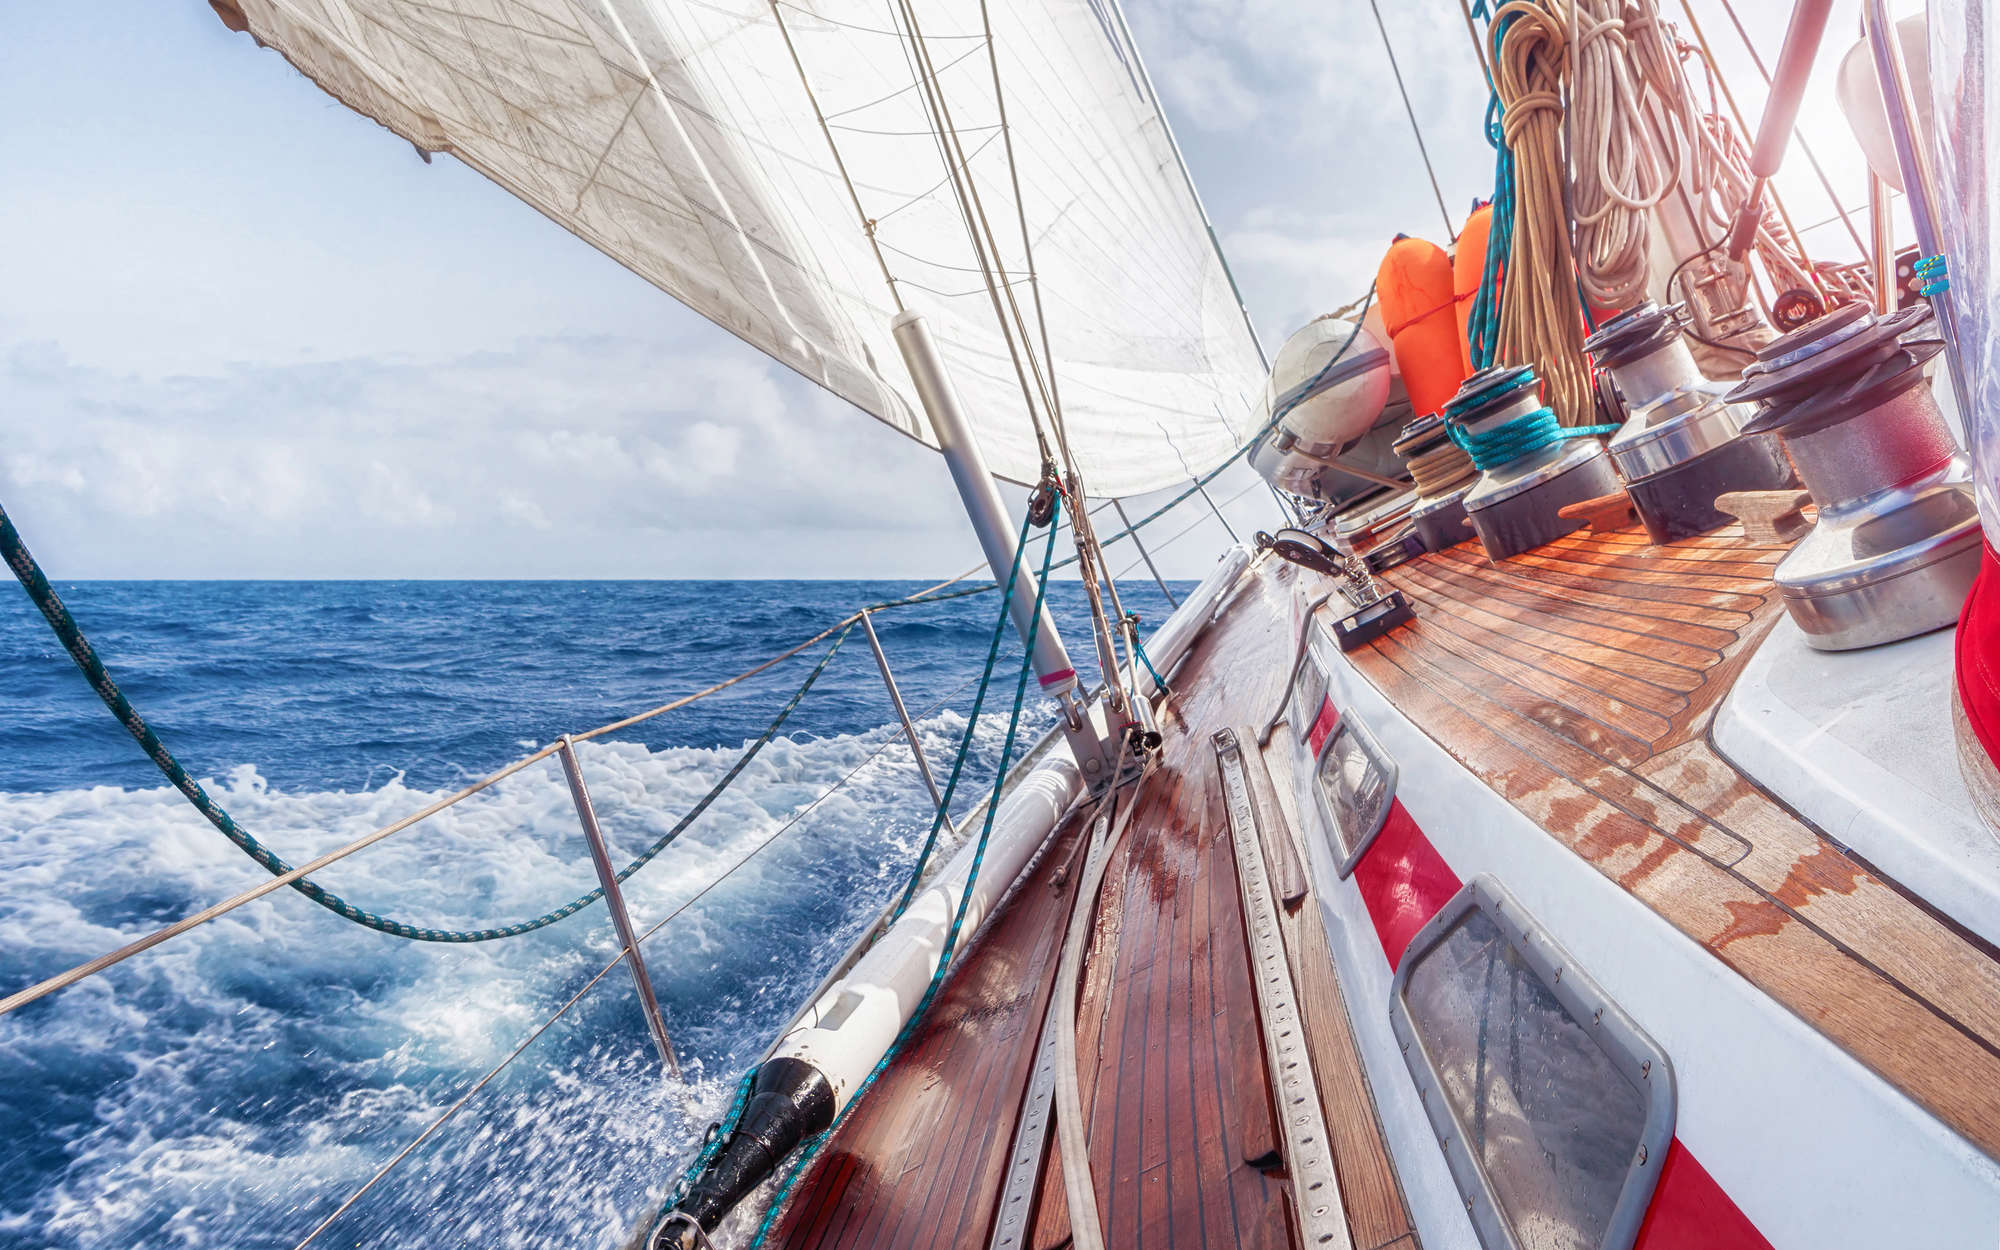             Fotomurali Barca a vela sul mare - Pile Premium liscio
        